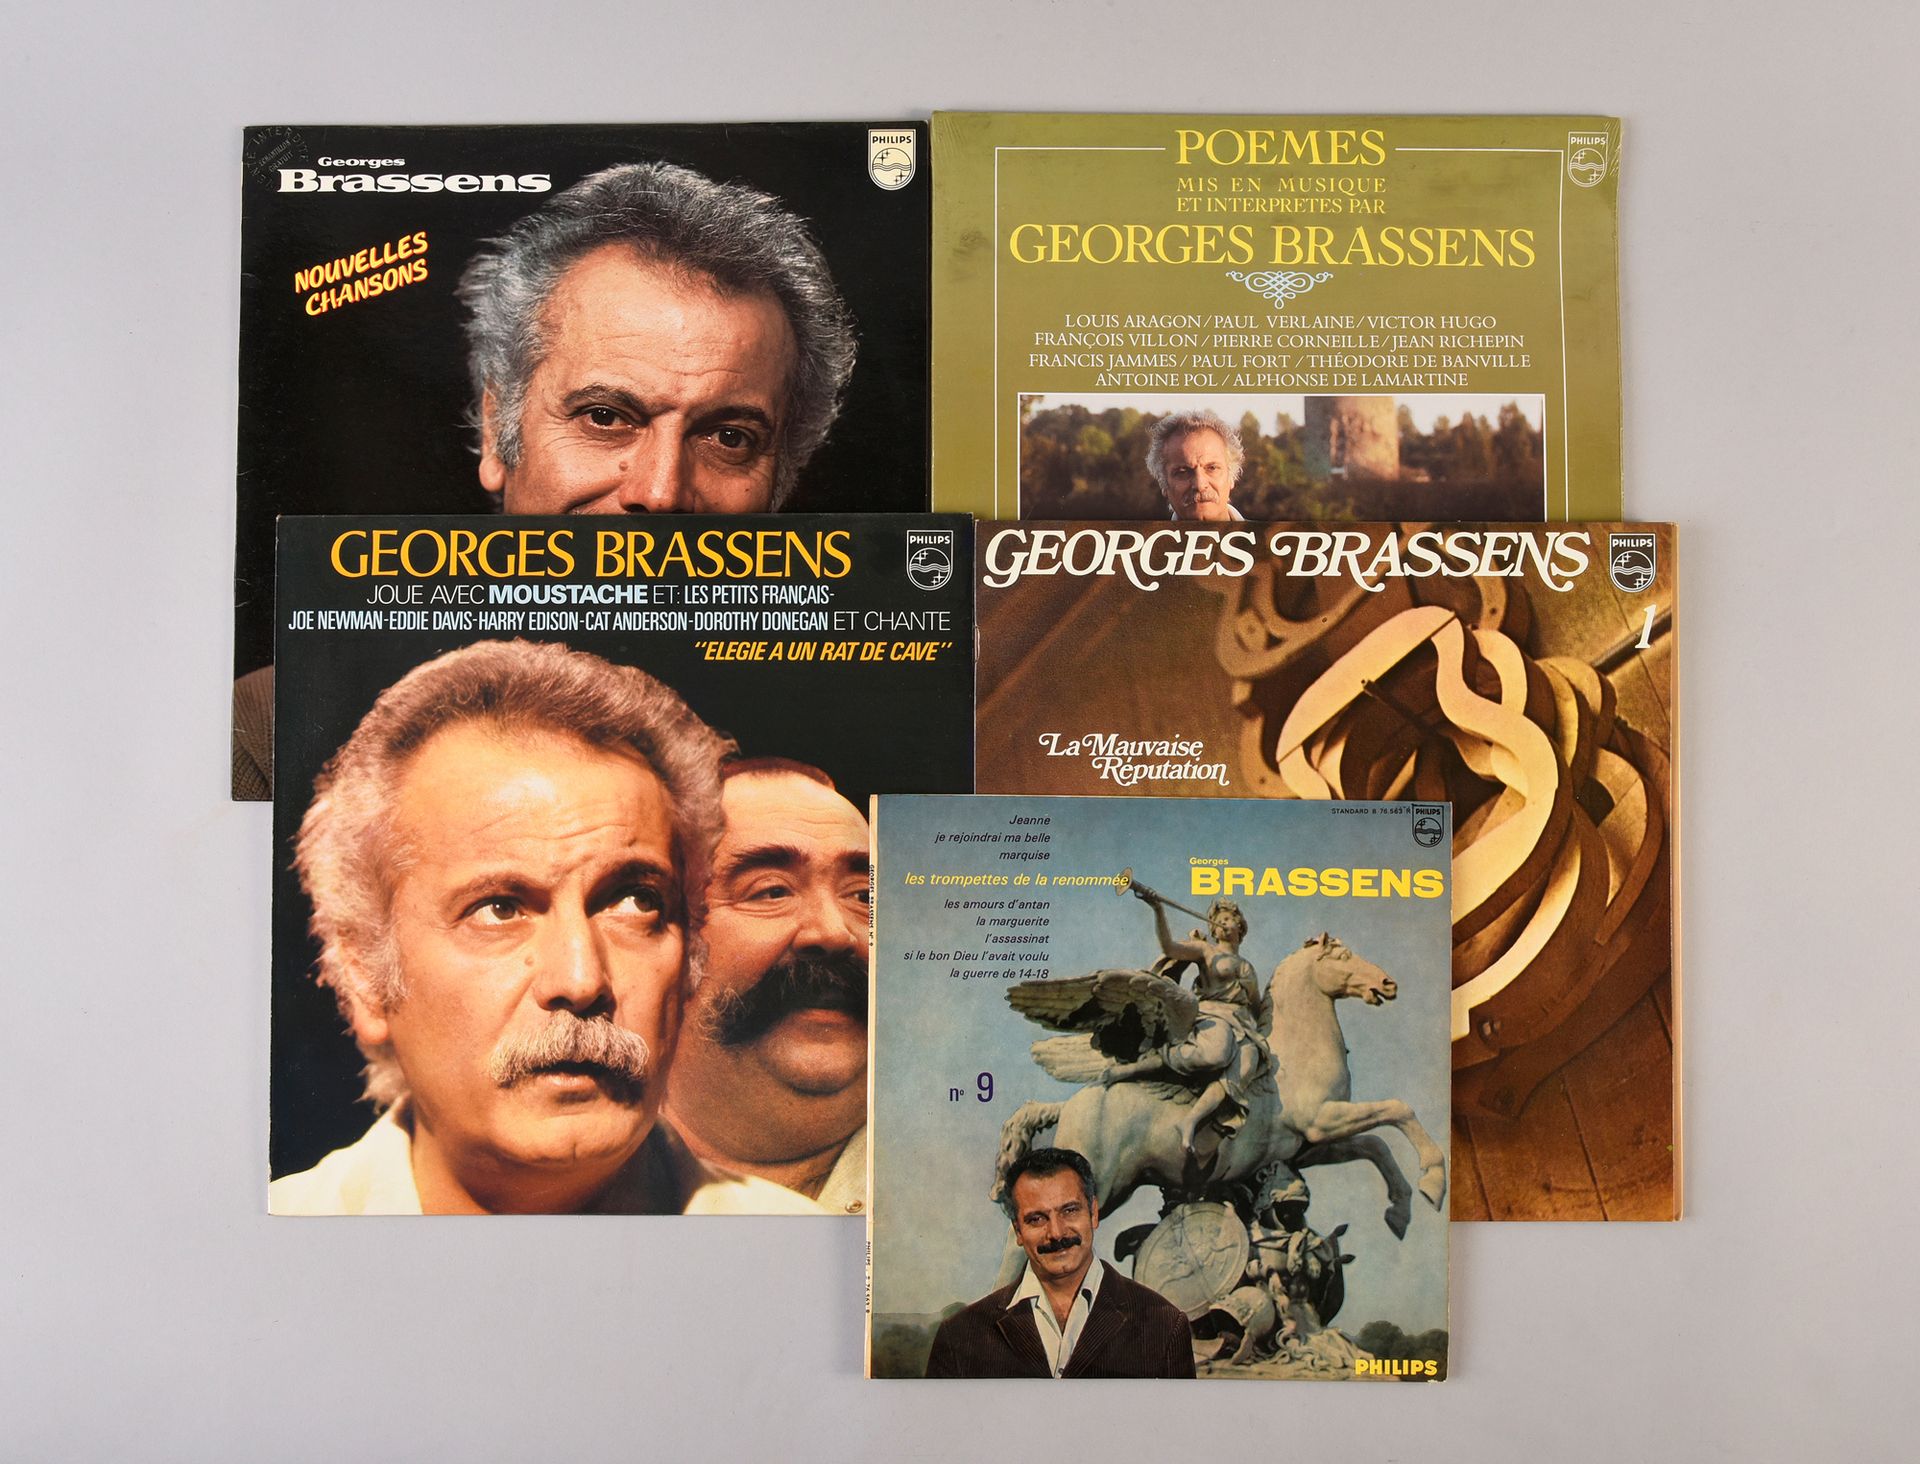 Null GEORGES BRASSENS (1921/1981) : 一套4张33转黑胶唱片和一张78转黑胶唱片。
这一套